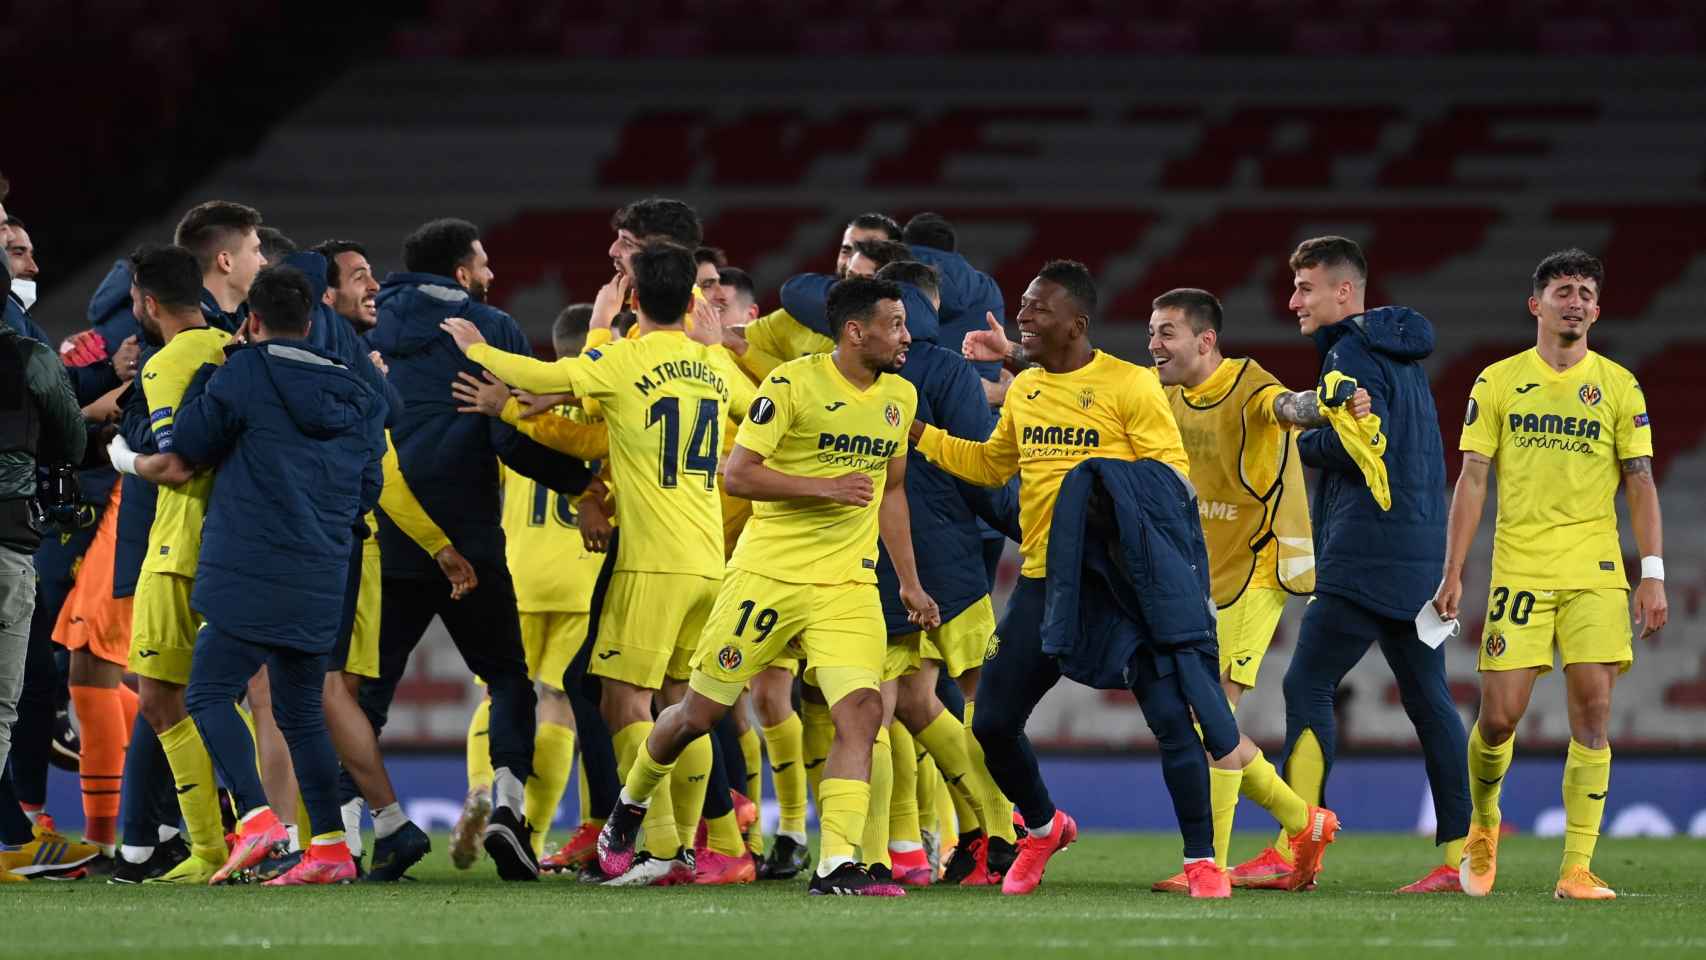 Los jugadores del Villarreal, eufóricos, celebrando el pase a la final de la Europa League / EFE